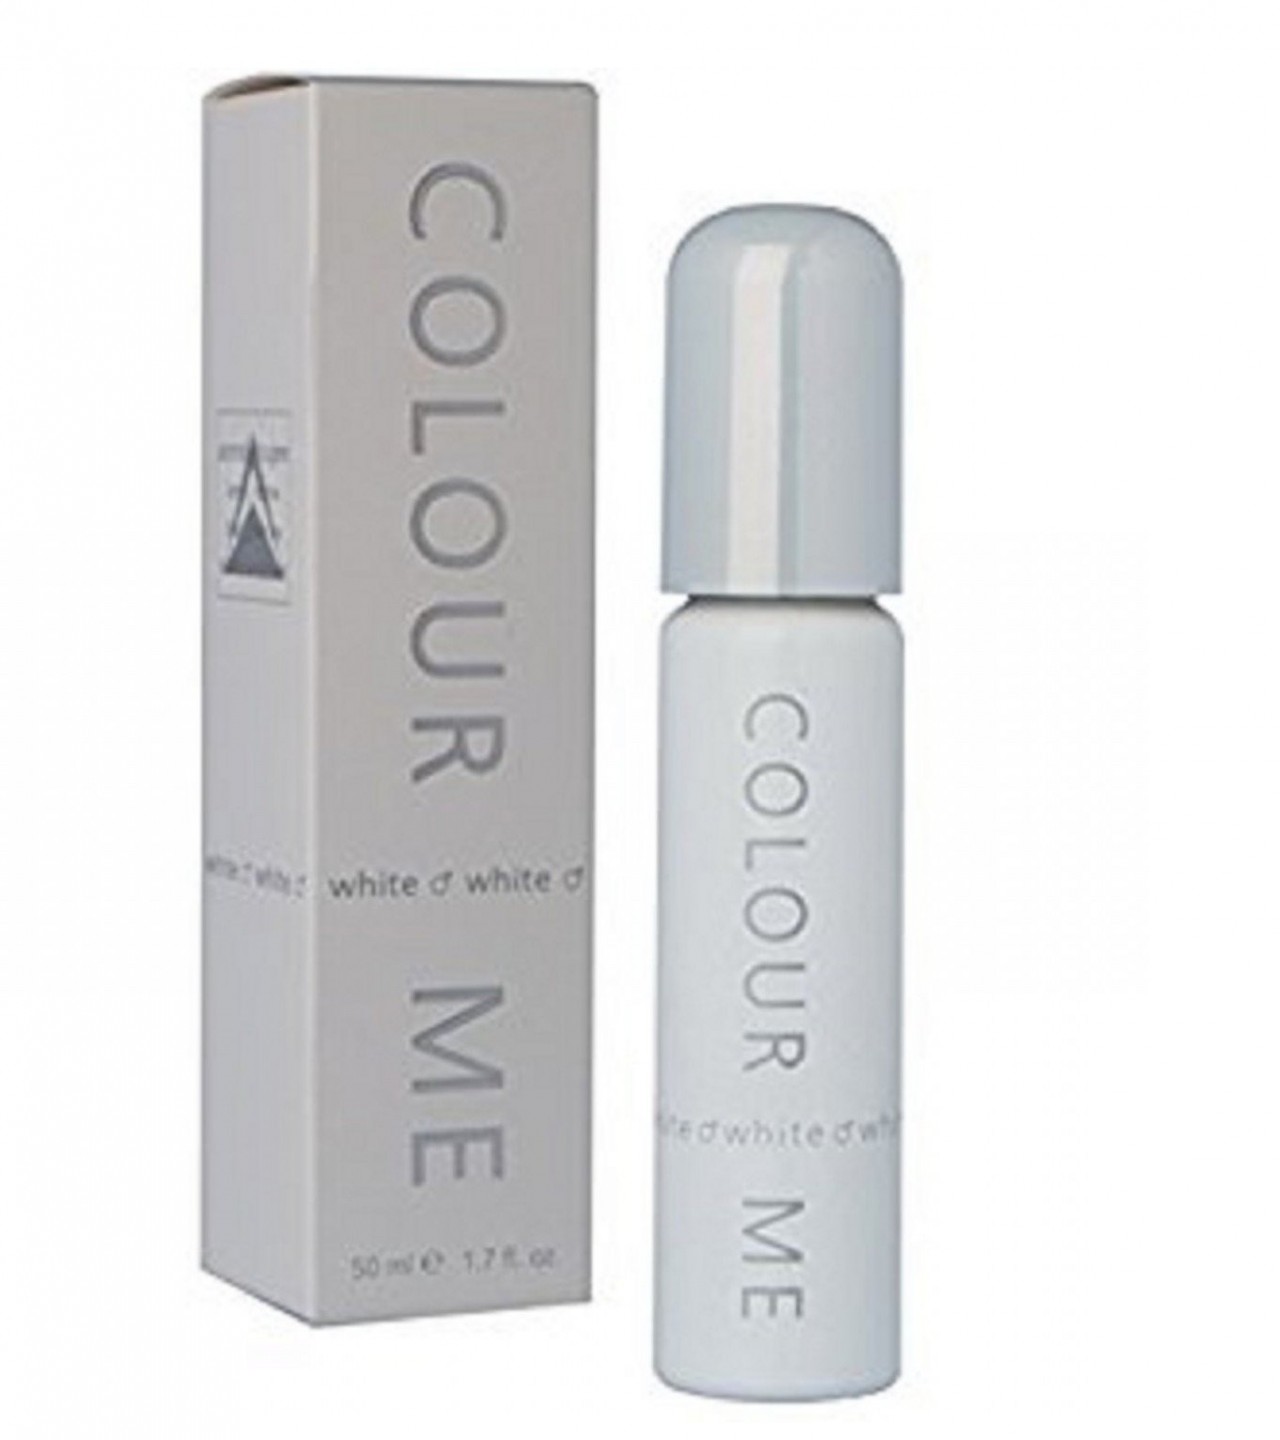 Milton Lloyd Colour Me Perfume for Men - 50 ml - White